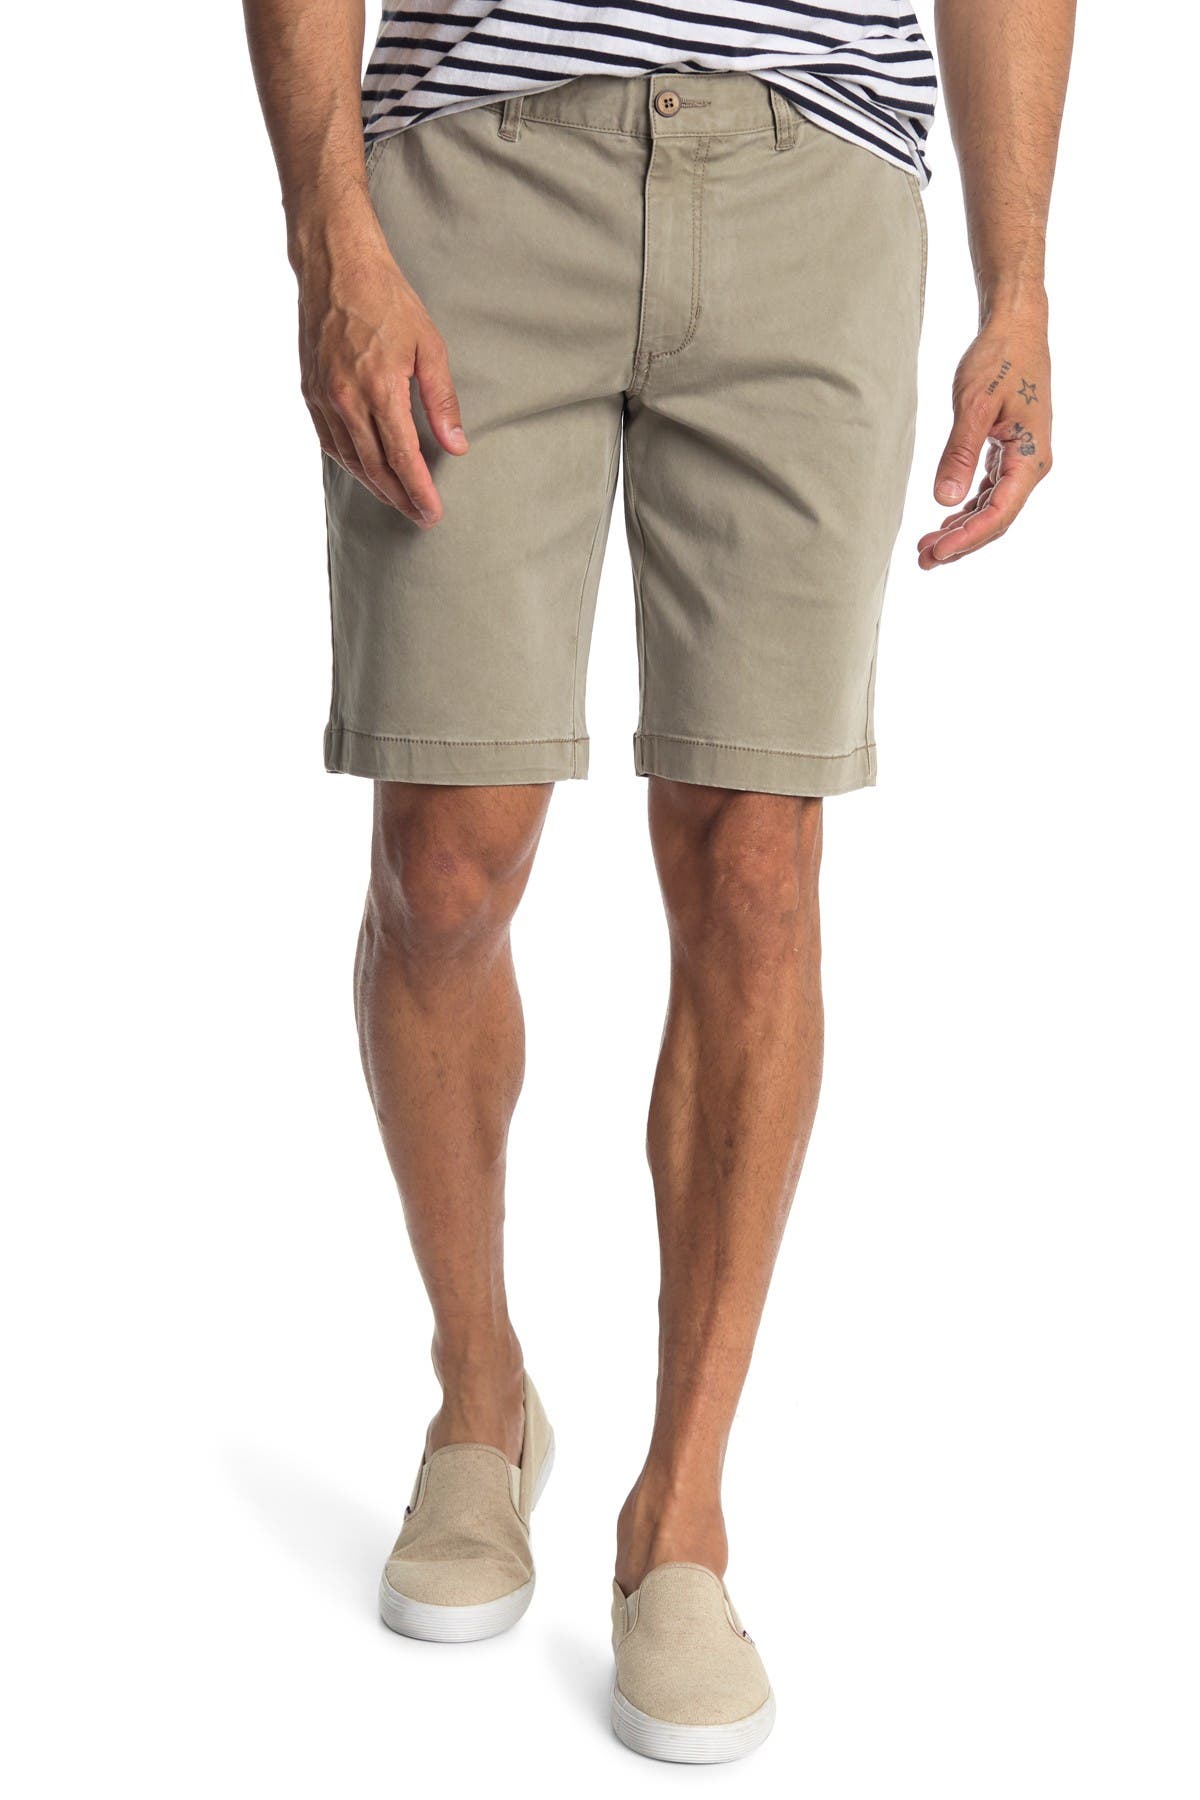 boracay shorts tommy bahama